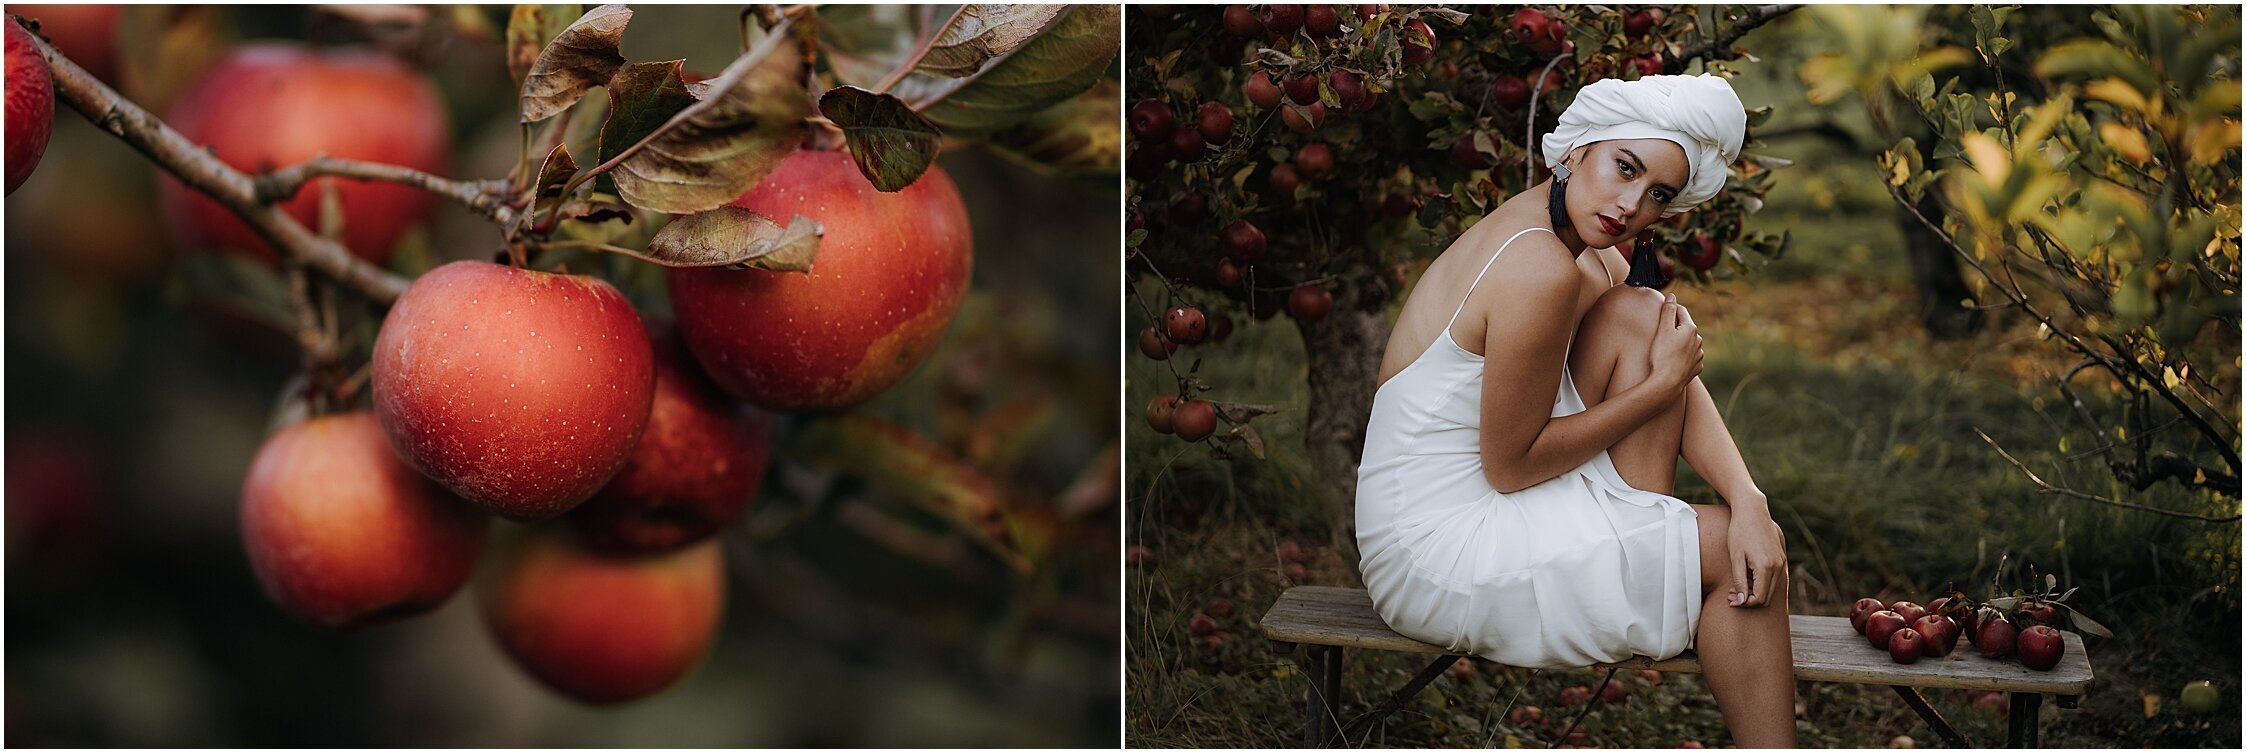 Zanda+Auckland+wedding+photographer+unique+portrait+photoshoot+ideas+autumn+winter+Windmill+apple+orchard+Coatesville+New+Zealand_21.jpeg